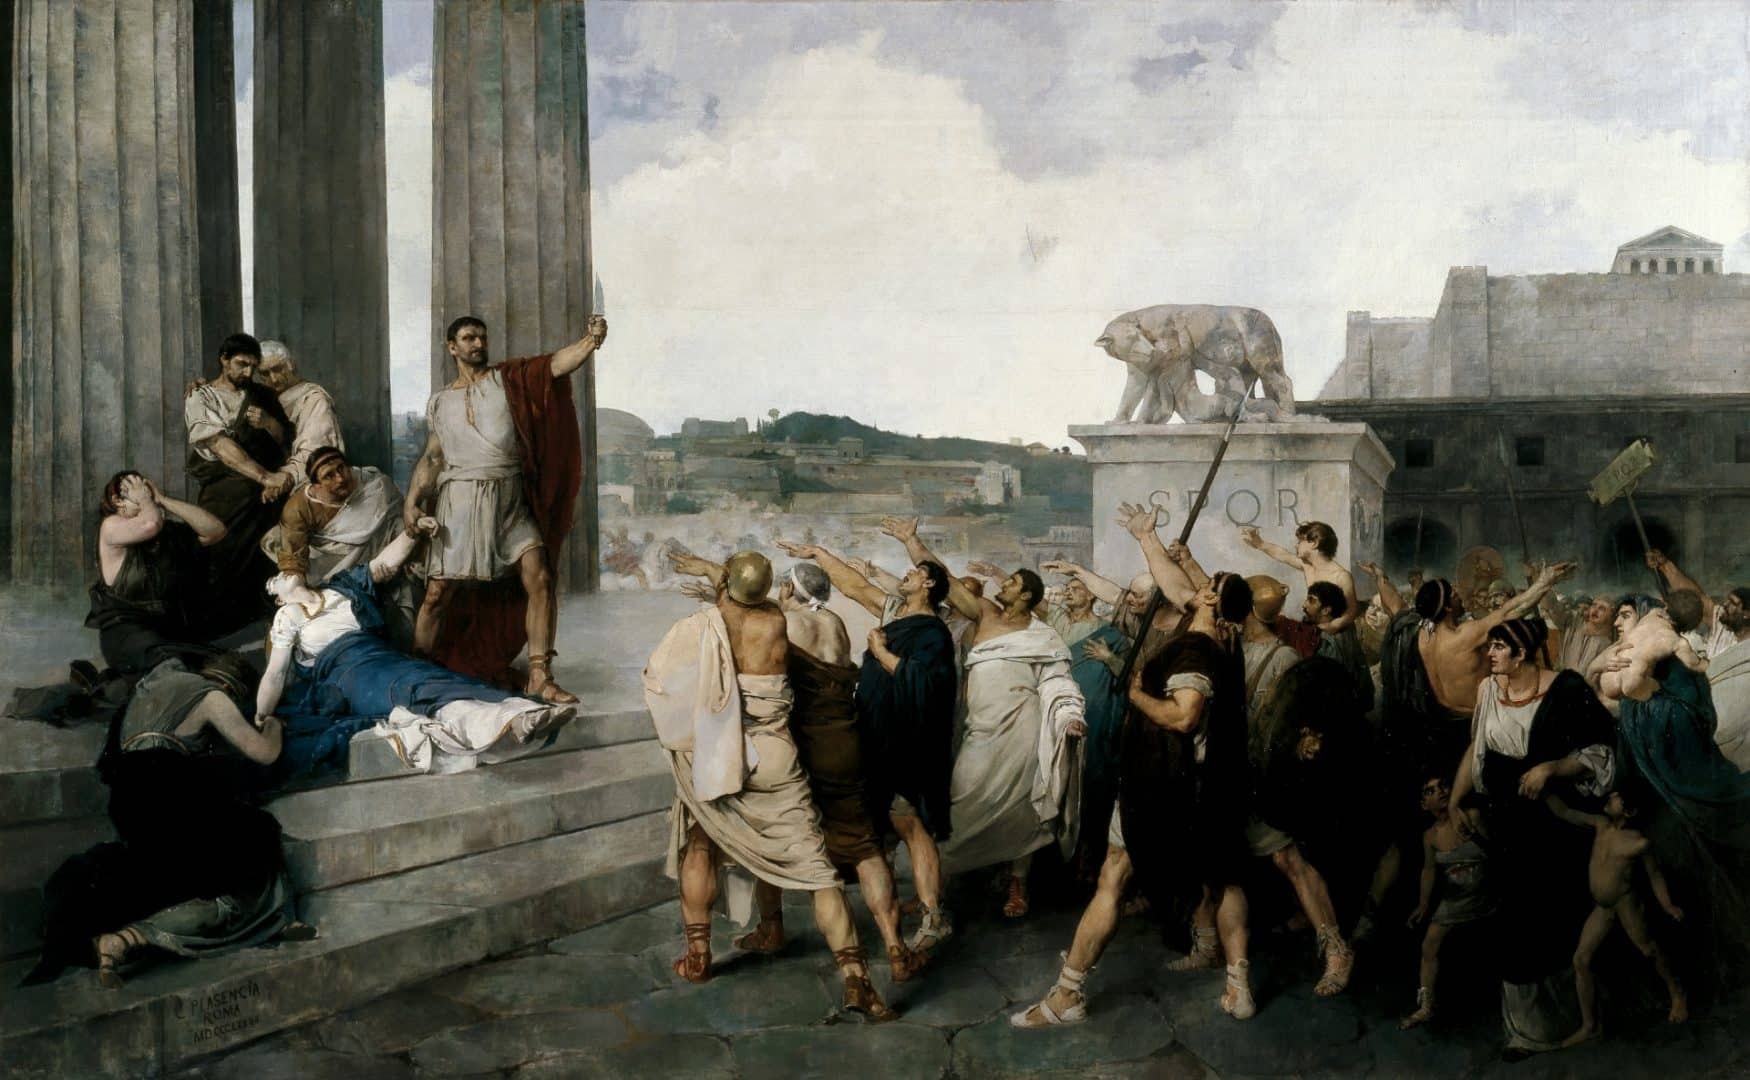 Conheça a Roma Antiga, o maior império que já existiu na história humana